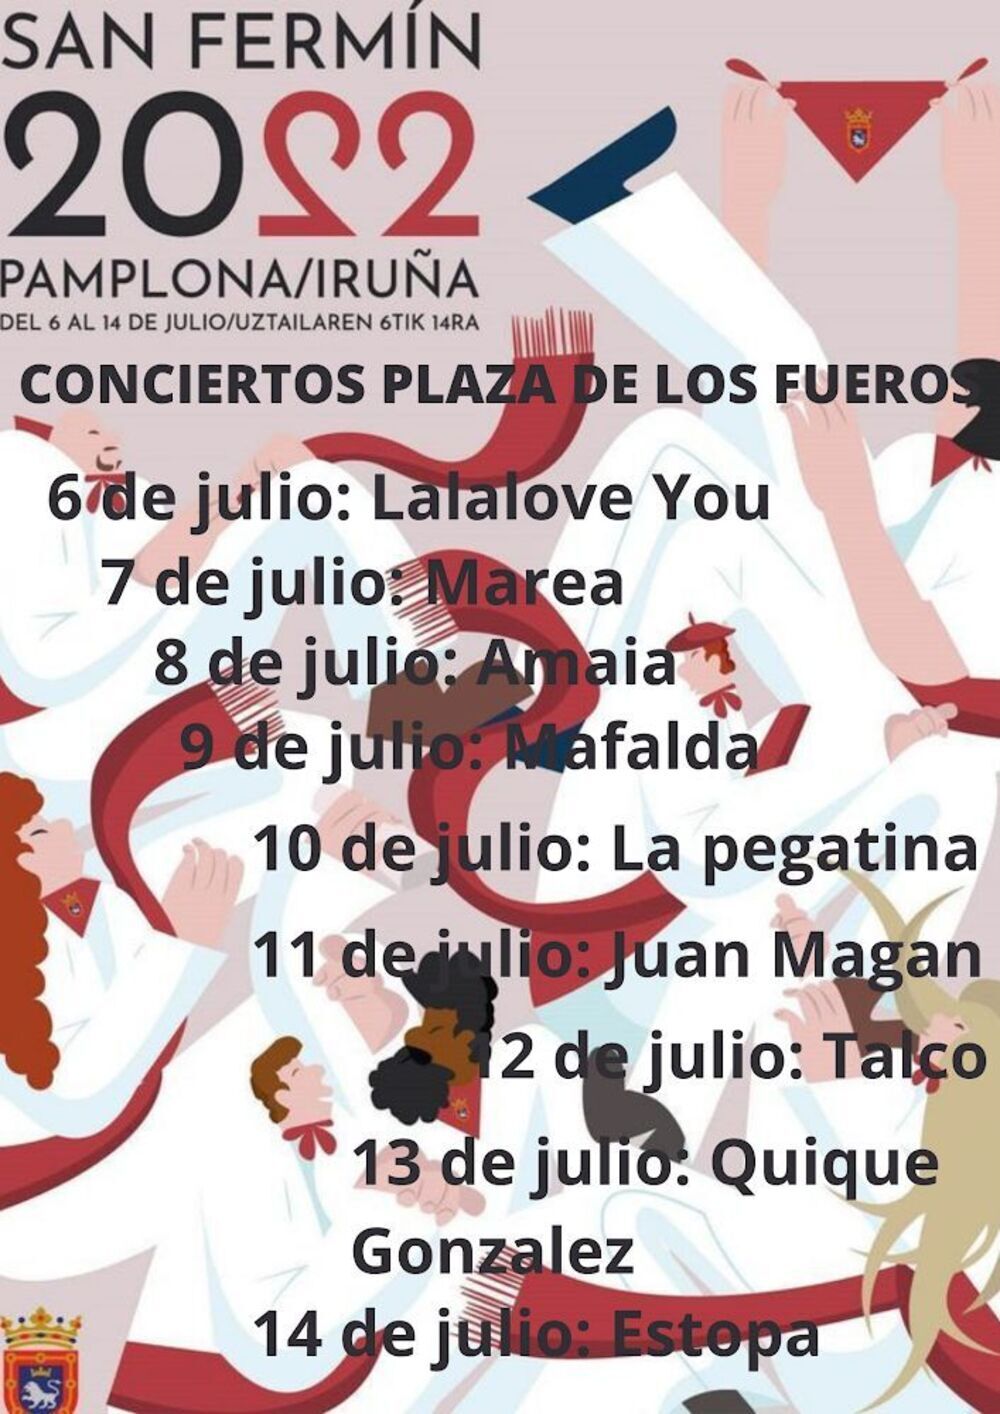 Se hace viral un cartel falso de conciertos para San Fermín